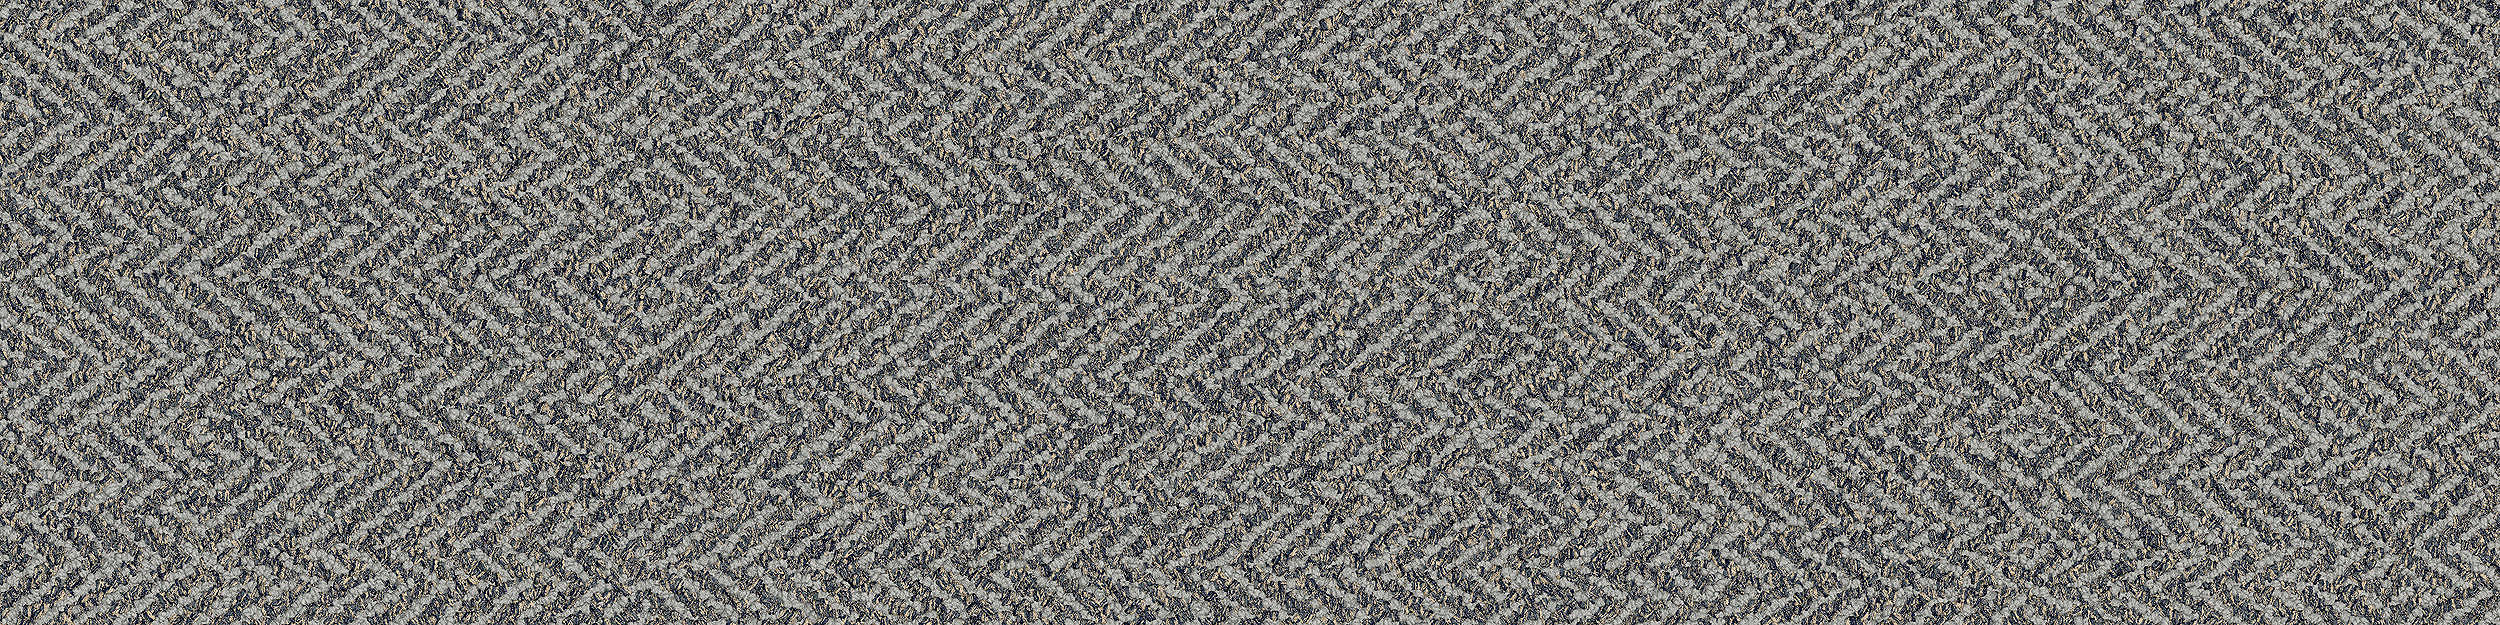 Third Space 308 Carpet Tile in Mist imagen número 6